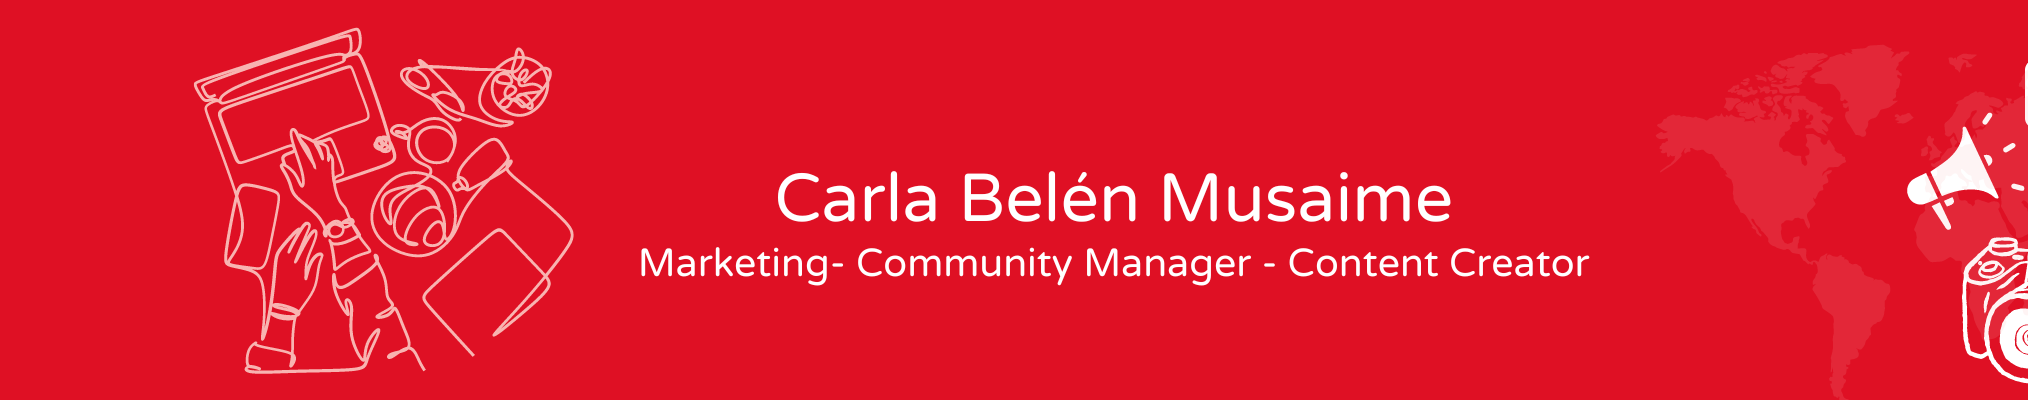 Banner profilu uživatele Carla Belén Musaime